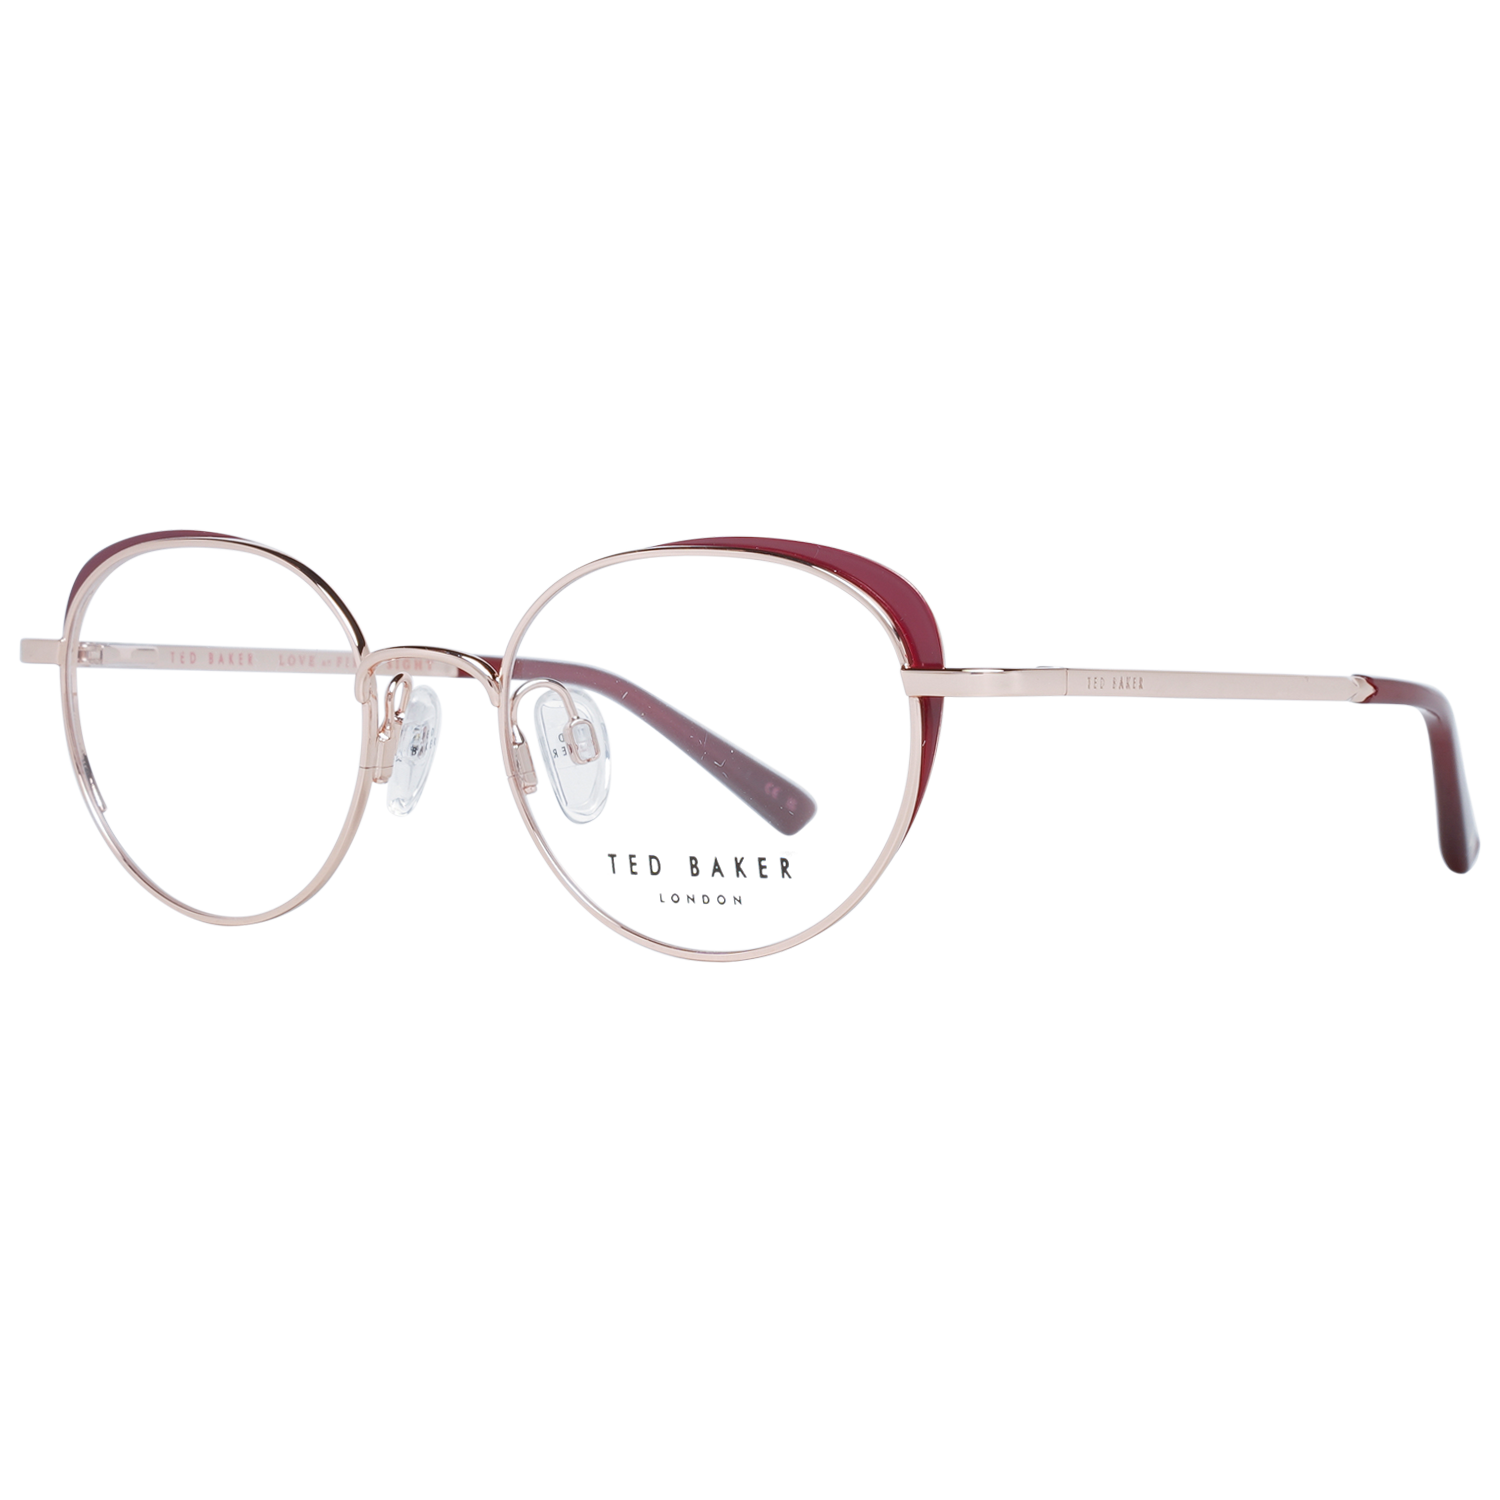 Ted Baker Frames Ted Baker Optical Frame Prescription Glasses TB2274 205 48 Eyeglasses Eyewear UK USA Australia 